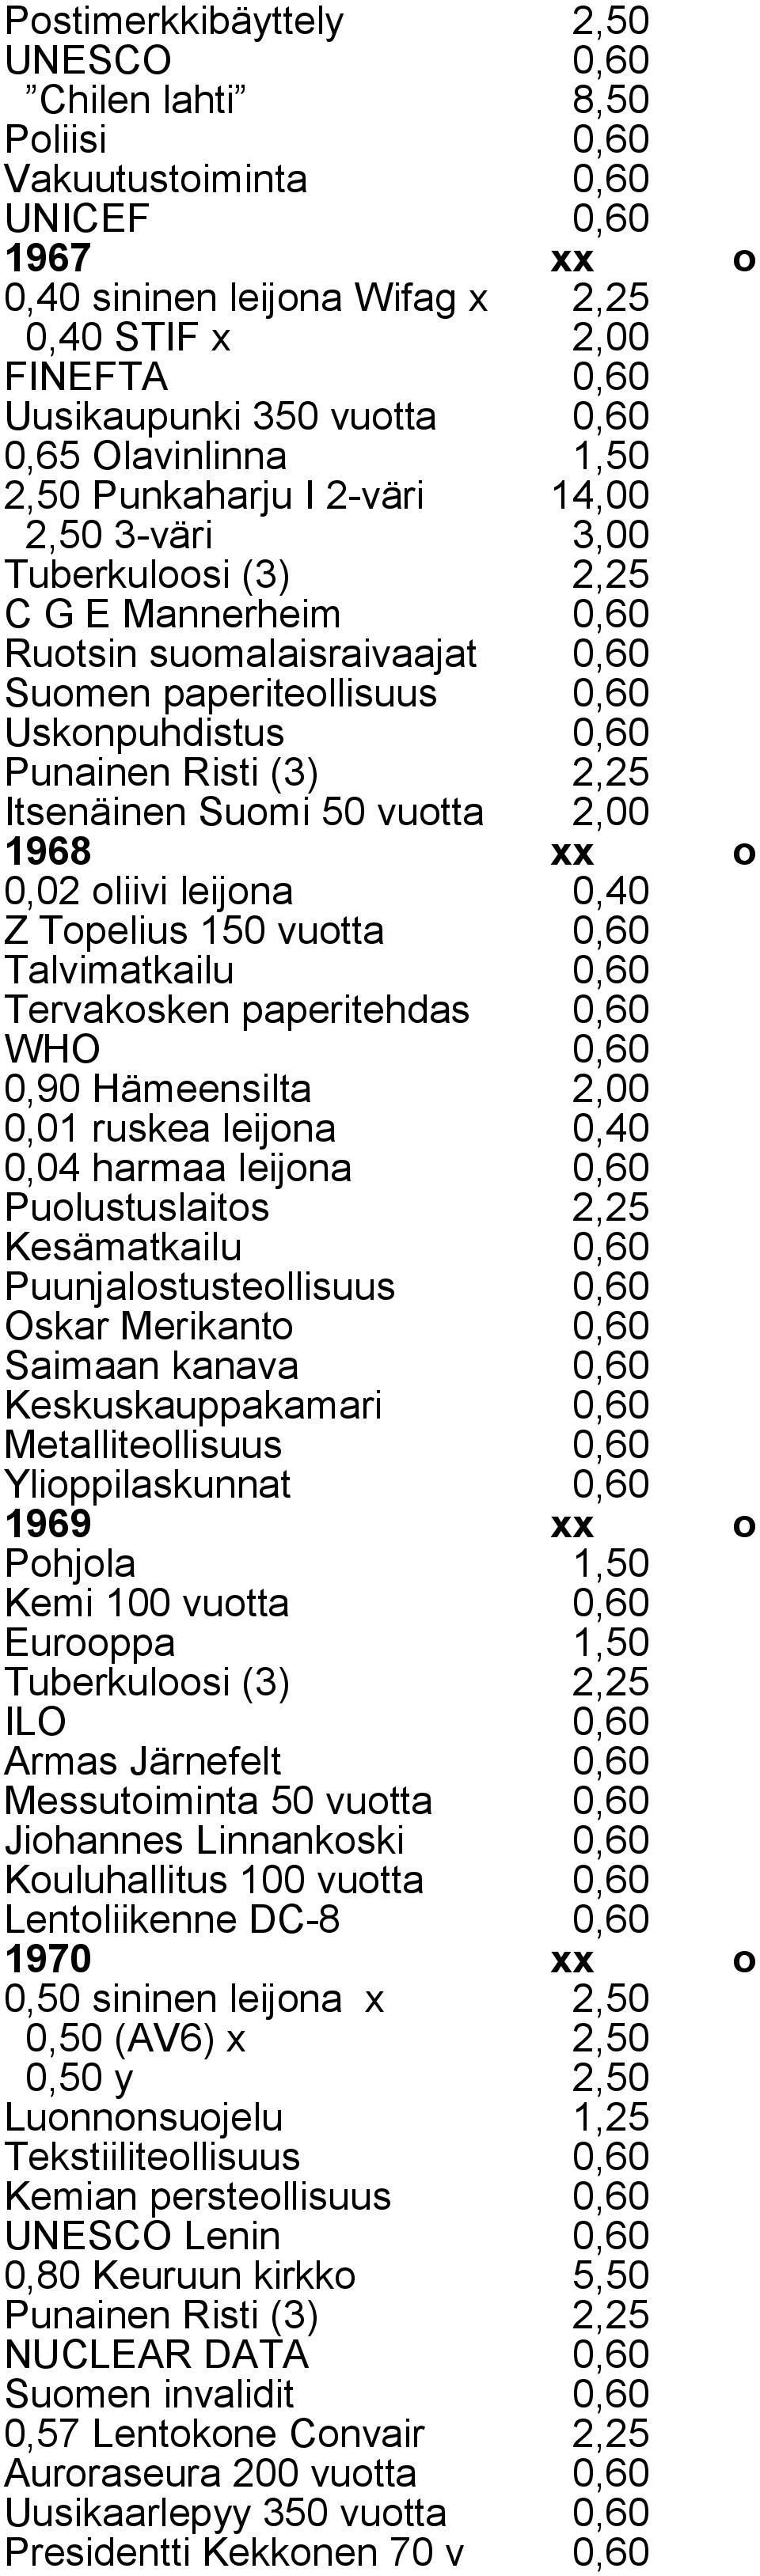 Punainen Risti (3) 2,25 Itsenäinen Suomi 50 vuotta 2,00 1968 xx o 0,02 oliivi leijona 0,40 Z Topelius 150 vuotta 0,60 Talvimatkailu 0,60 Tervakosken paperitehdas 0,60 WHO 0,60 0,90 Hämeensilta 2,00